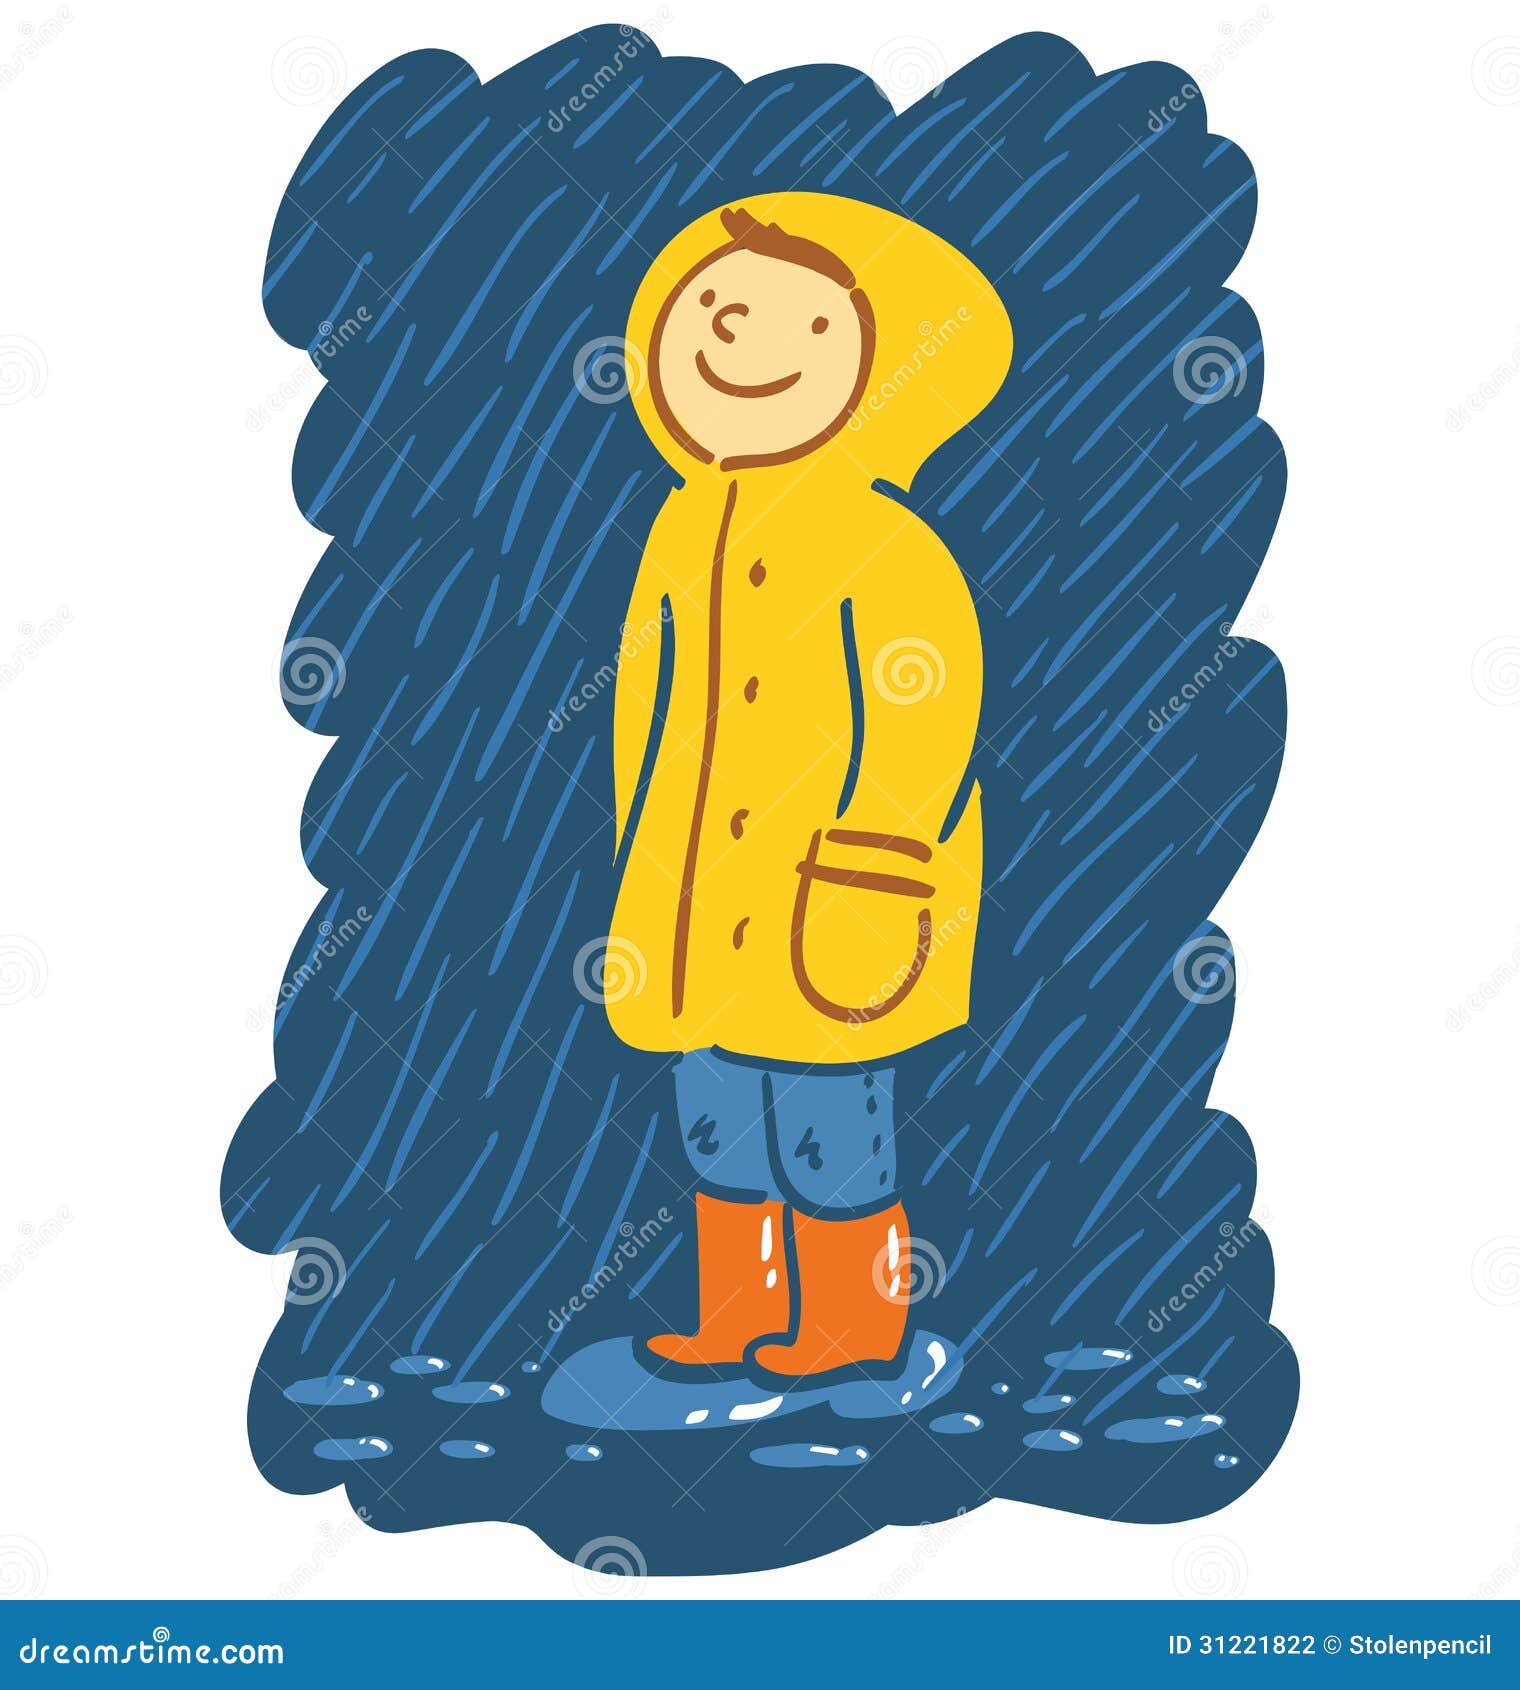 rain jacket clipart - photo #42